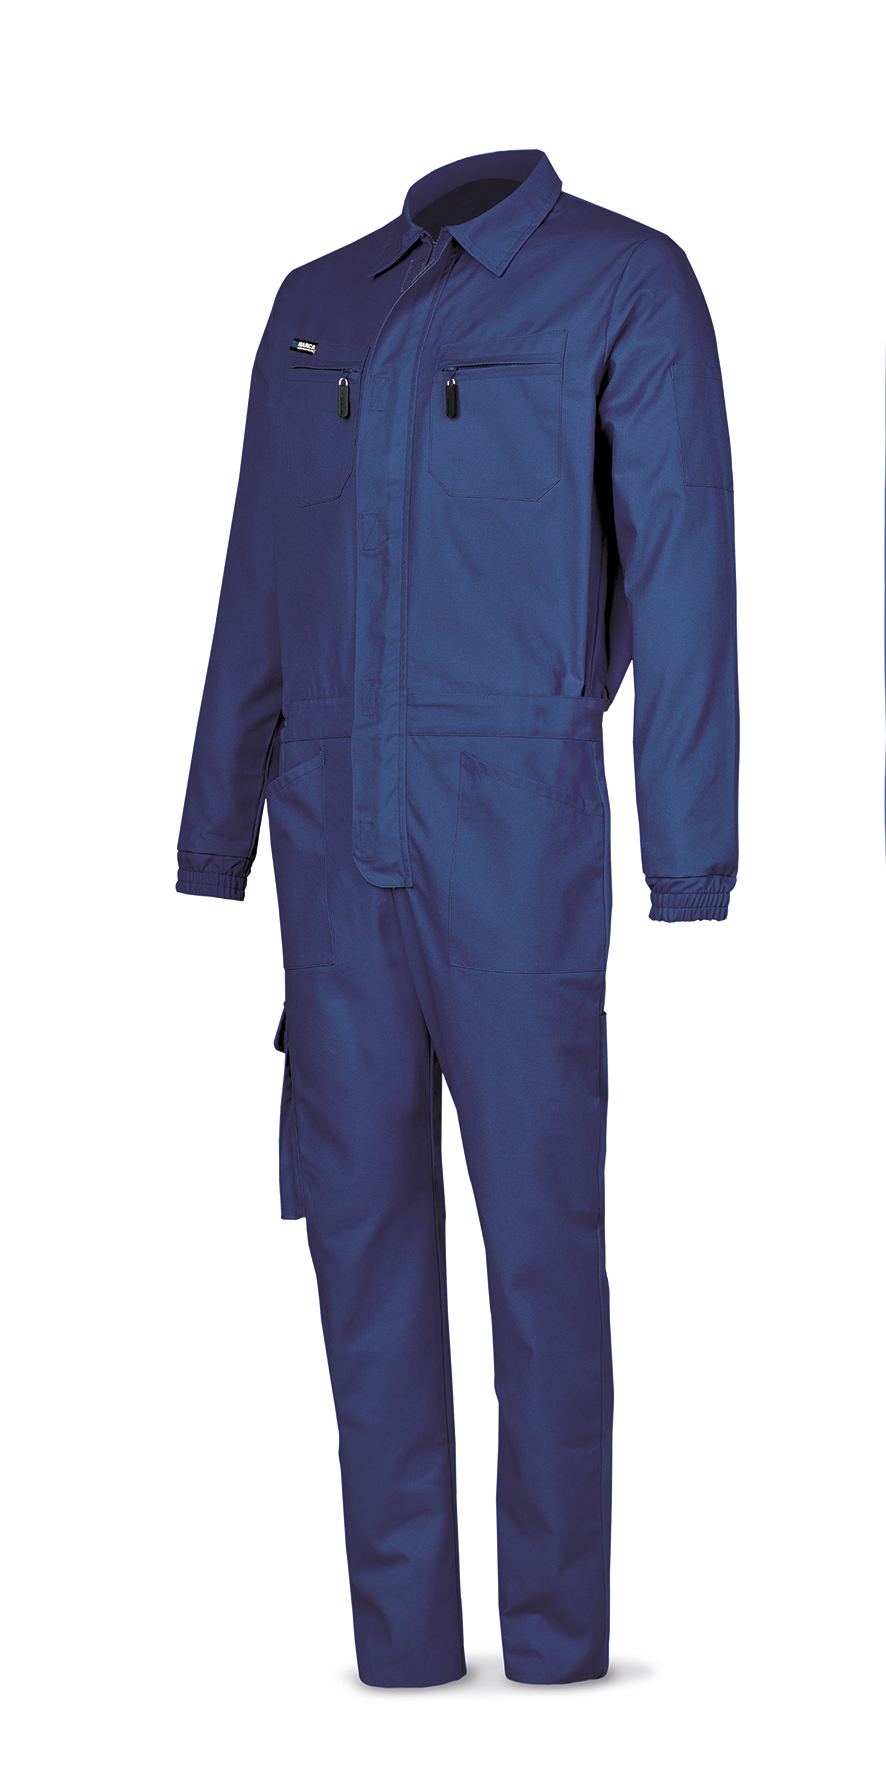 488-BT Top Vestuario Laboral Serie Top Buzo azulina poliéster/algodón de 245 g.